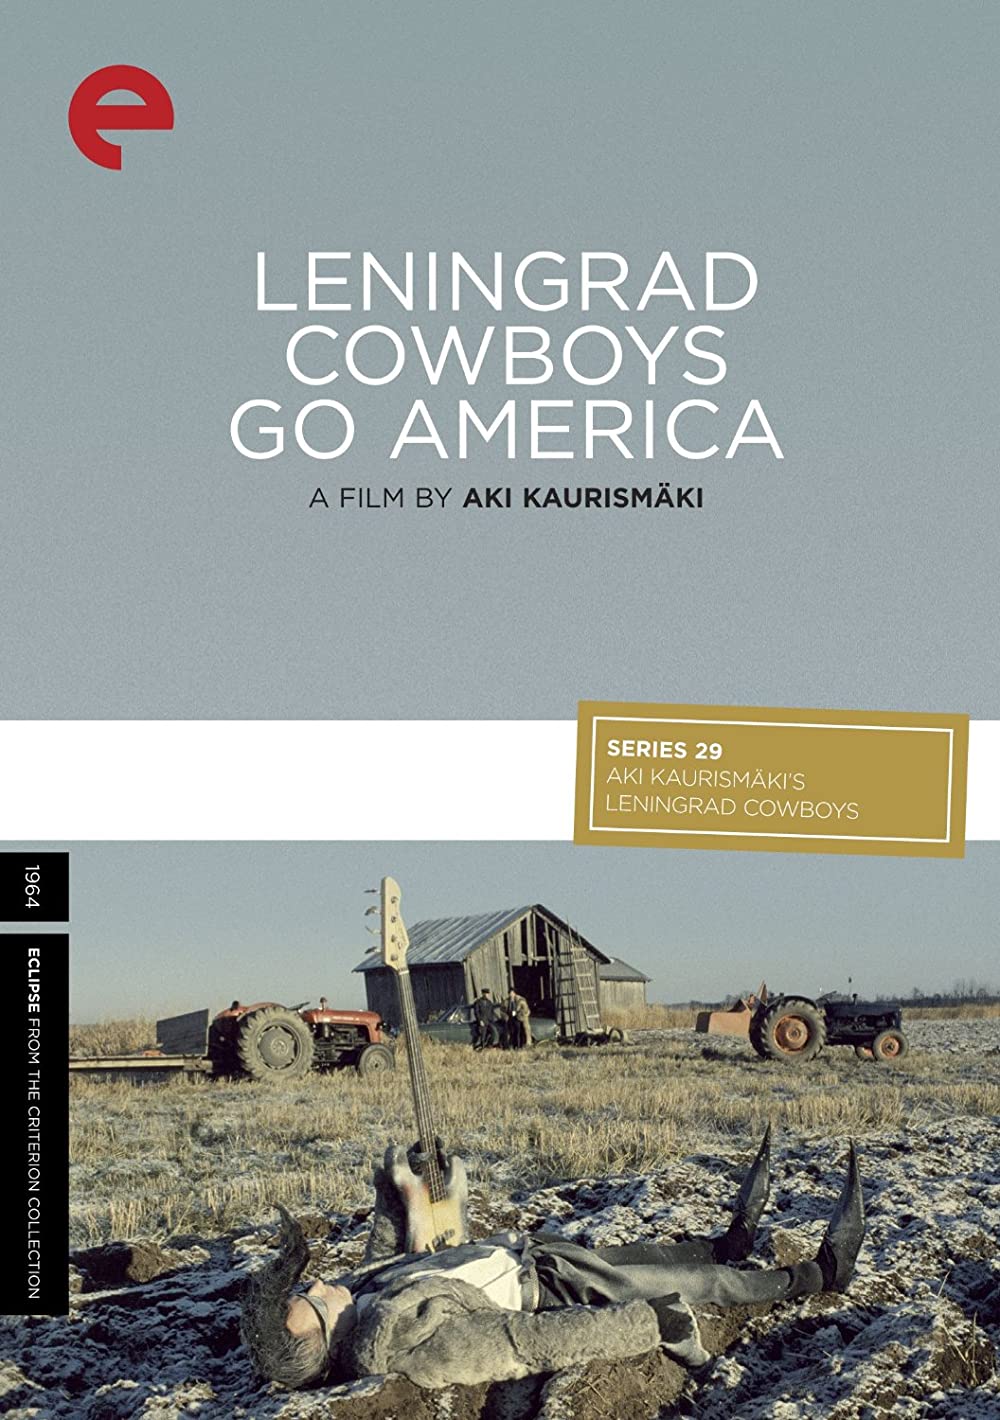 Filmbeschreibung zu Leningrad Cowboys Go America